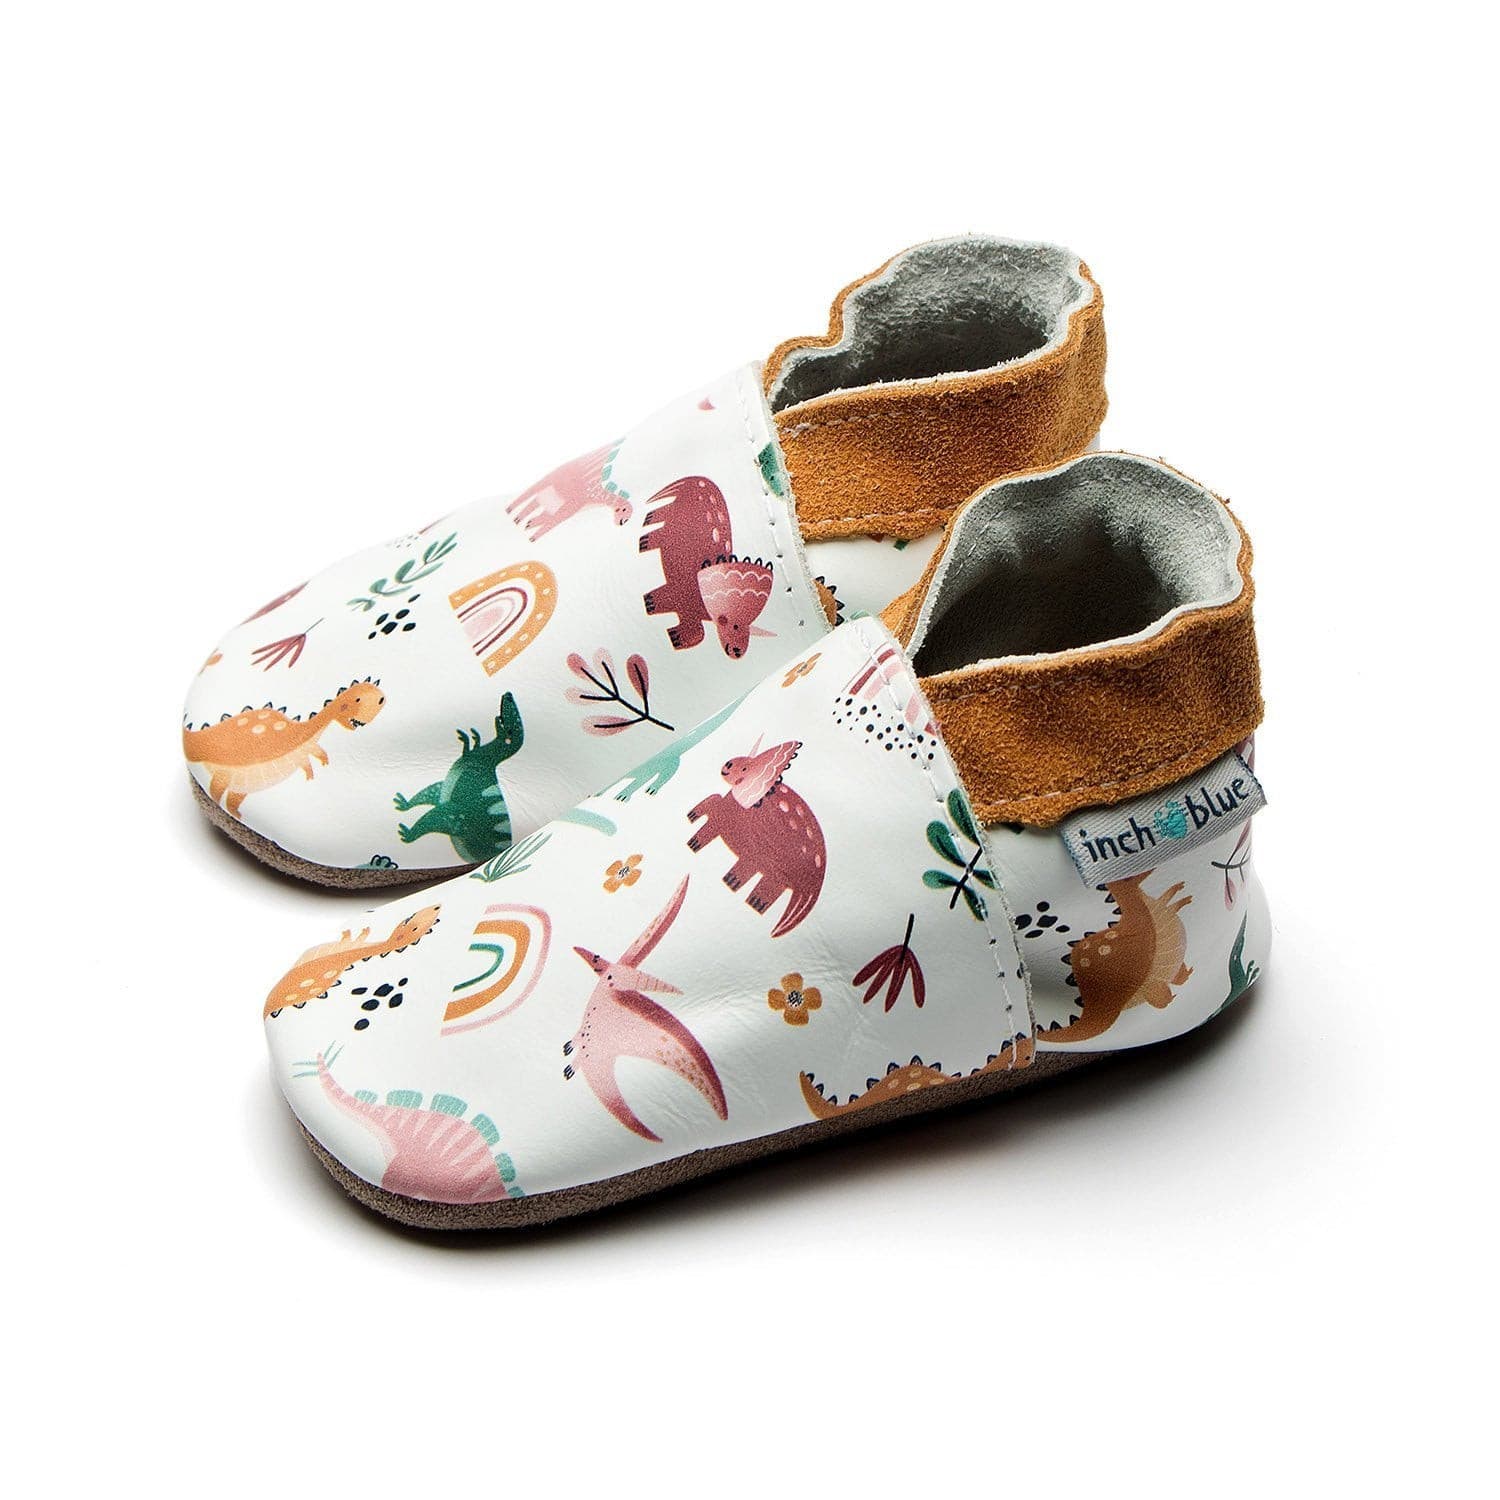 Dinosaur Soft Shoes.